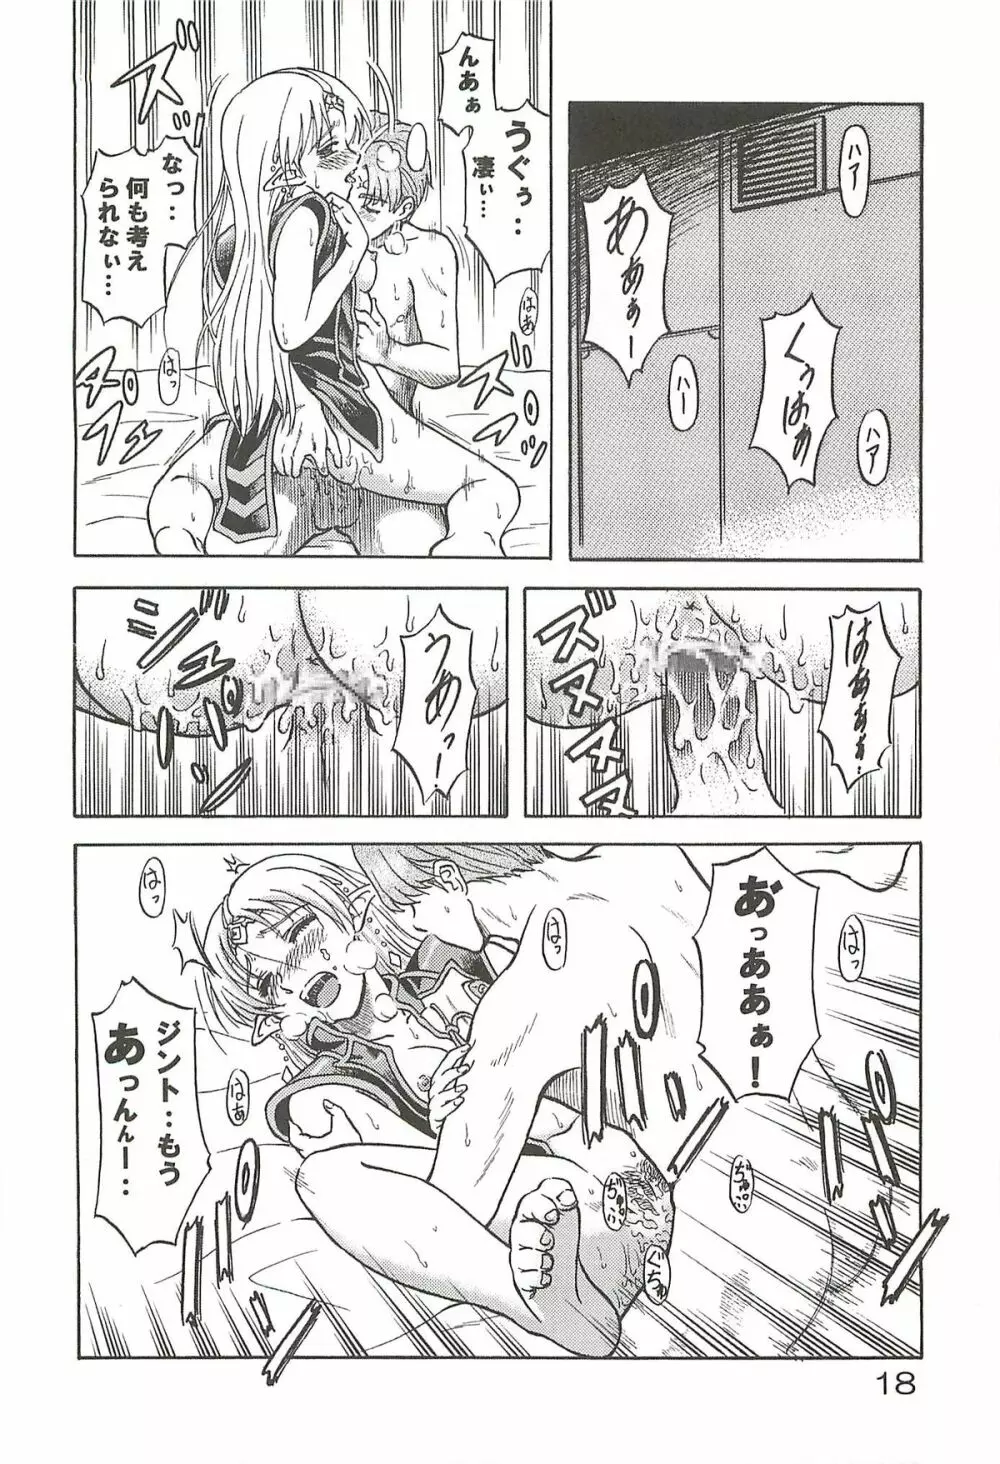 追放覚悟 Special edition Phase1 - page17